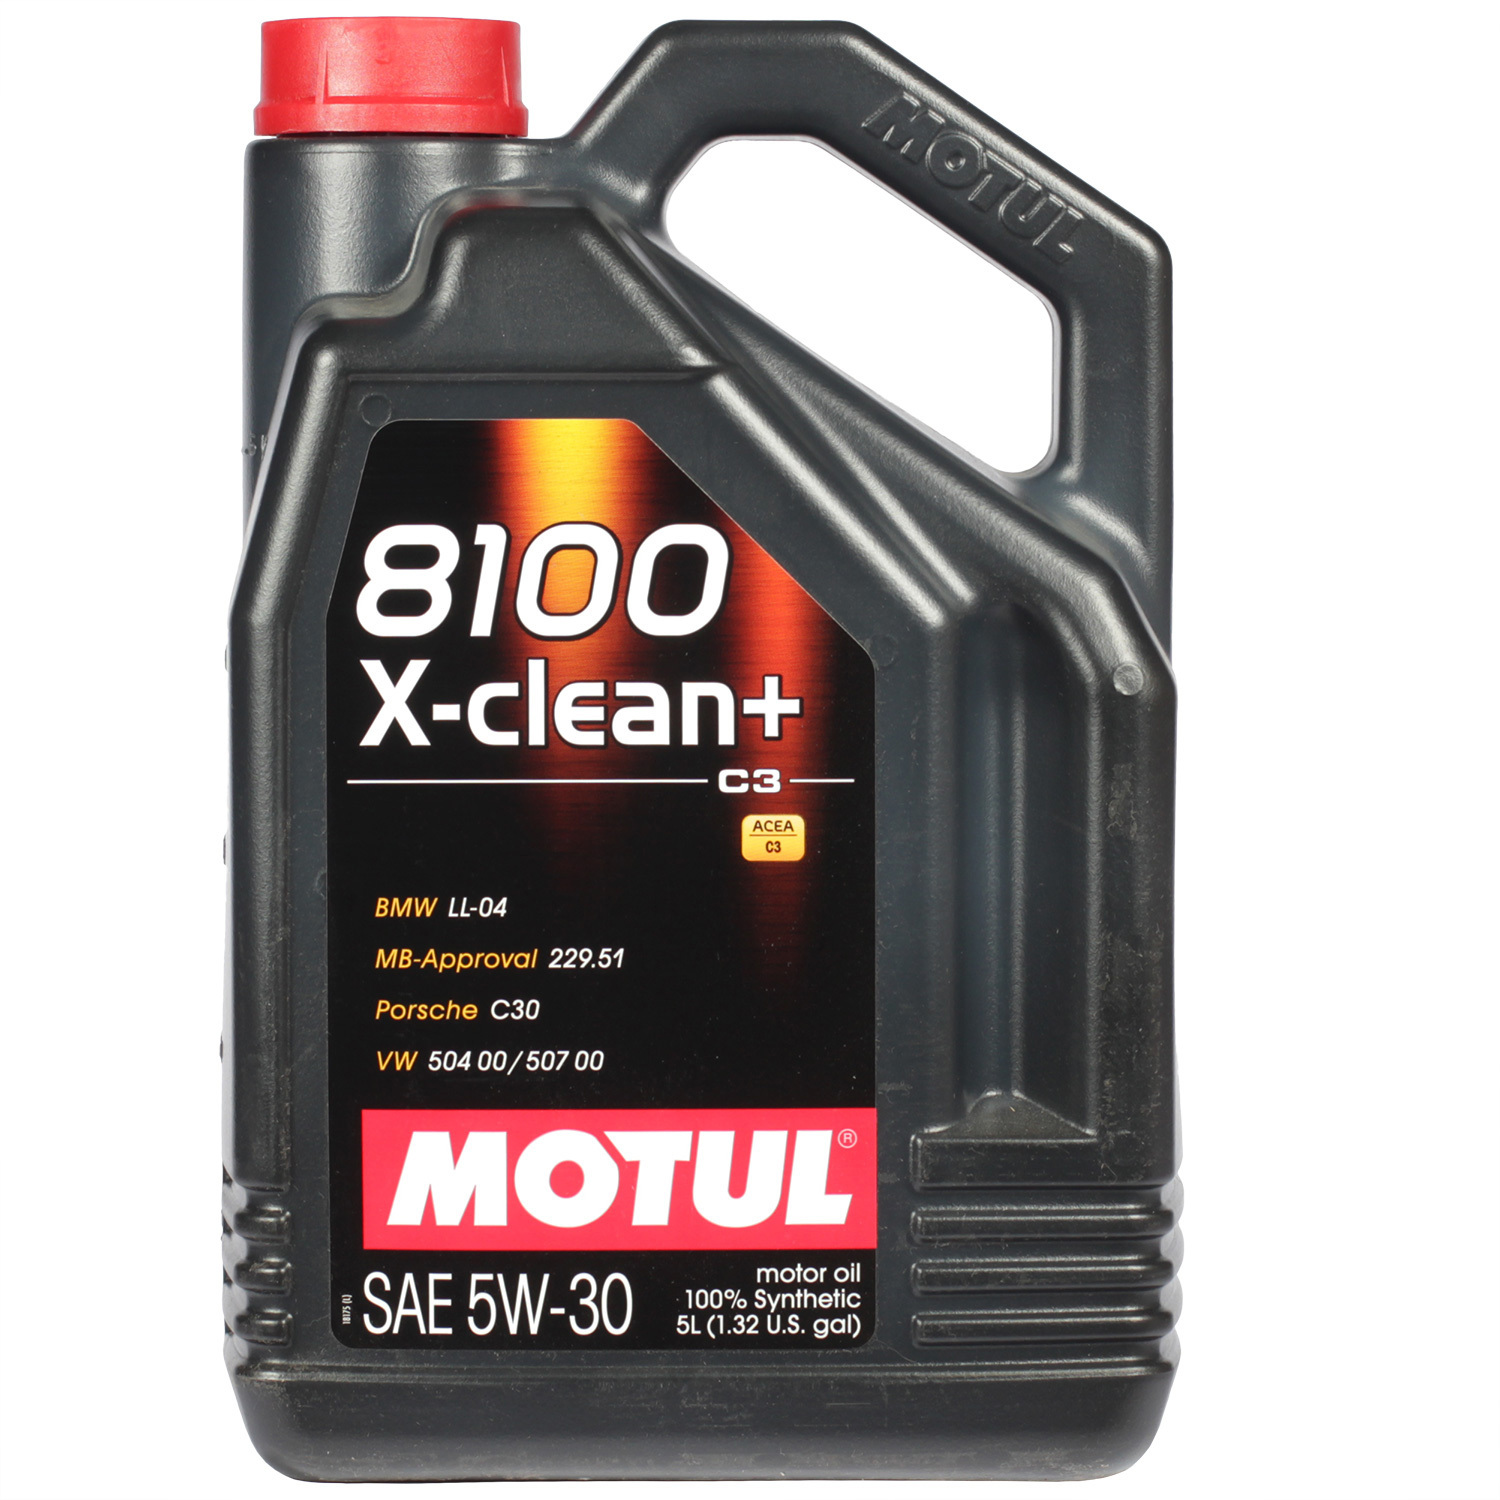 Motul Моторное масло Motul 8100 X-clean+ 5W-30, 5 л motul моторное масло motul 6100 syn clean 5w 30 5 л